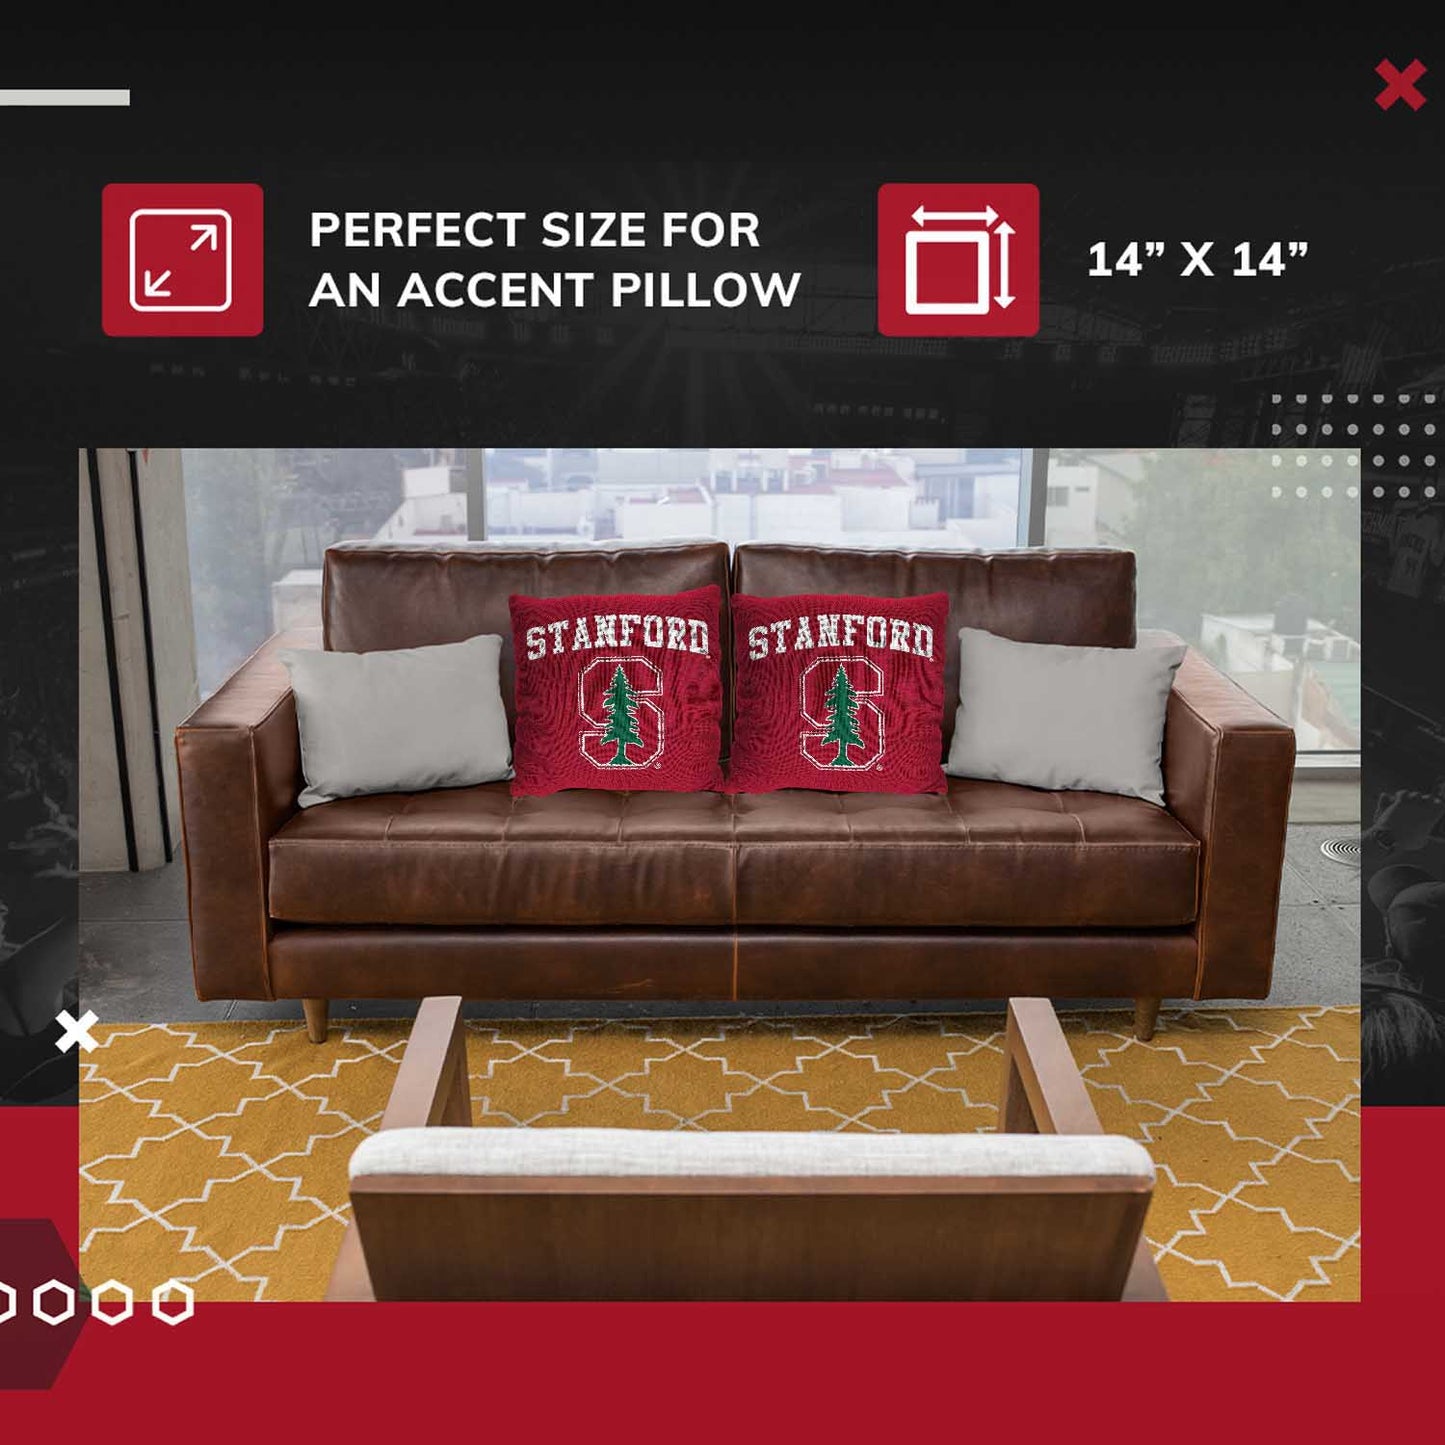 Stanford Cardinal NCAA Decorative Pillow - Cardinal